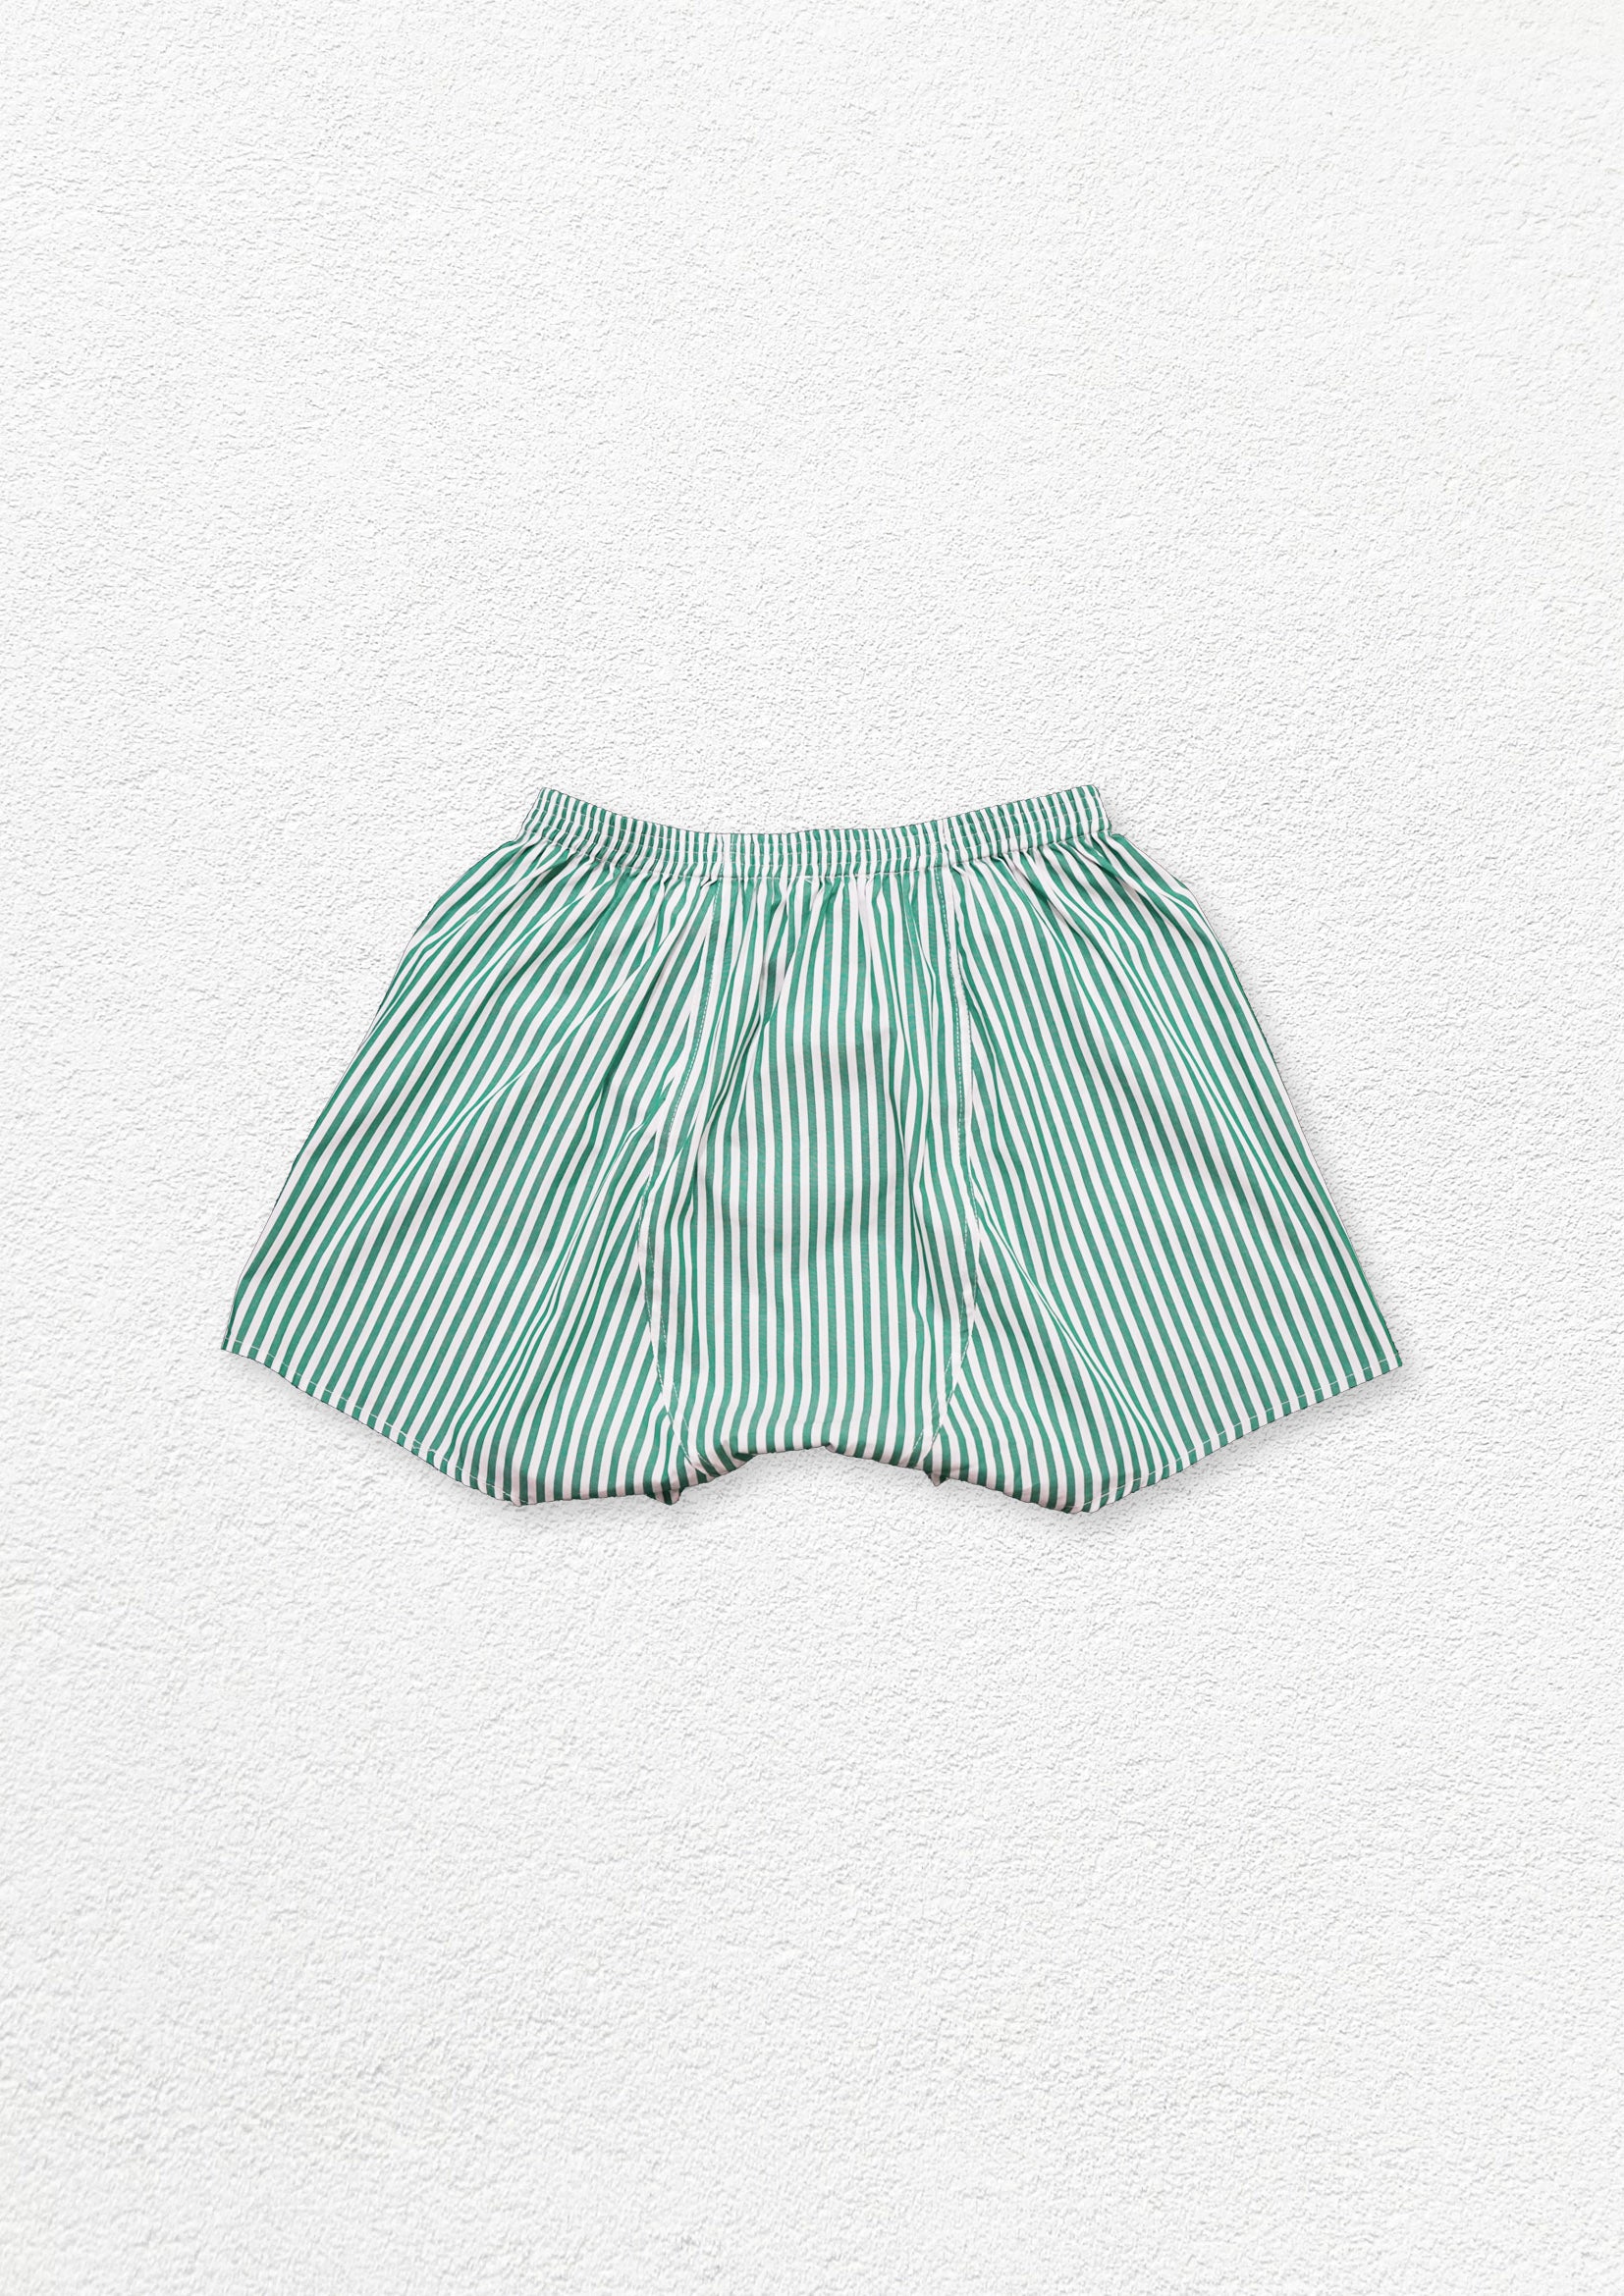 Unisex striped boxer shorts underwear - green